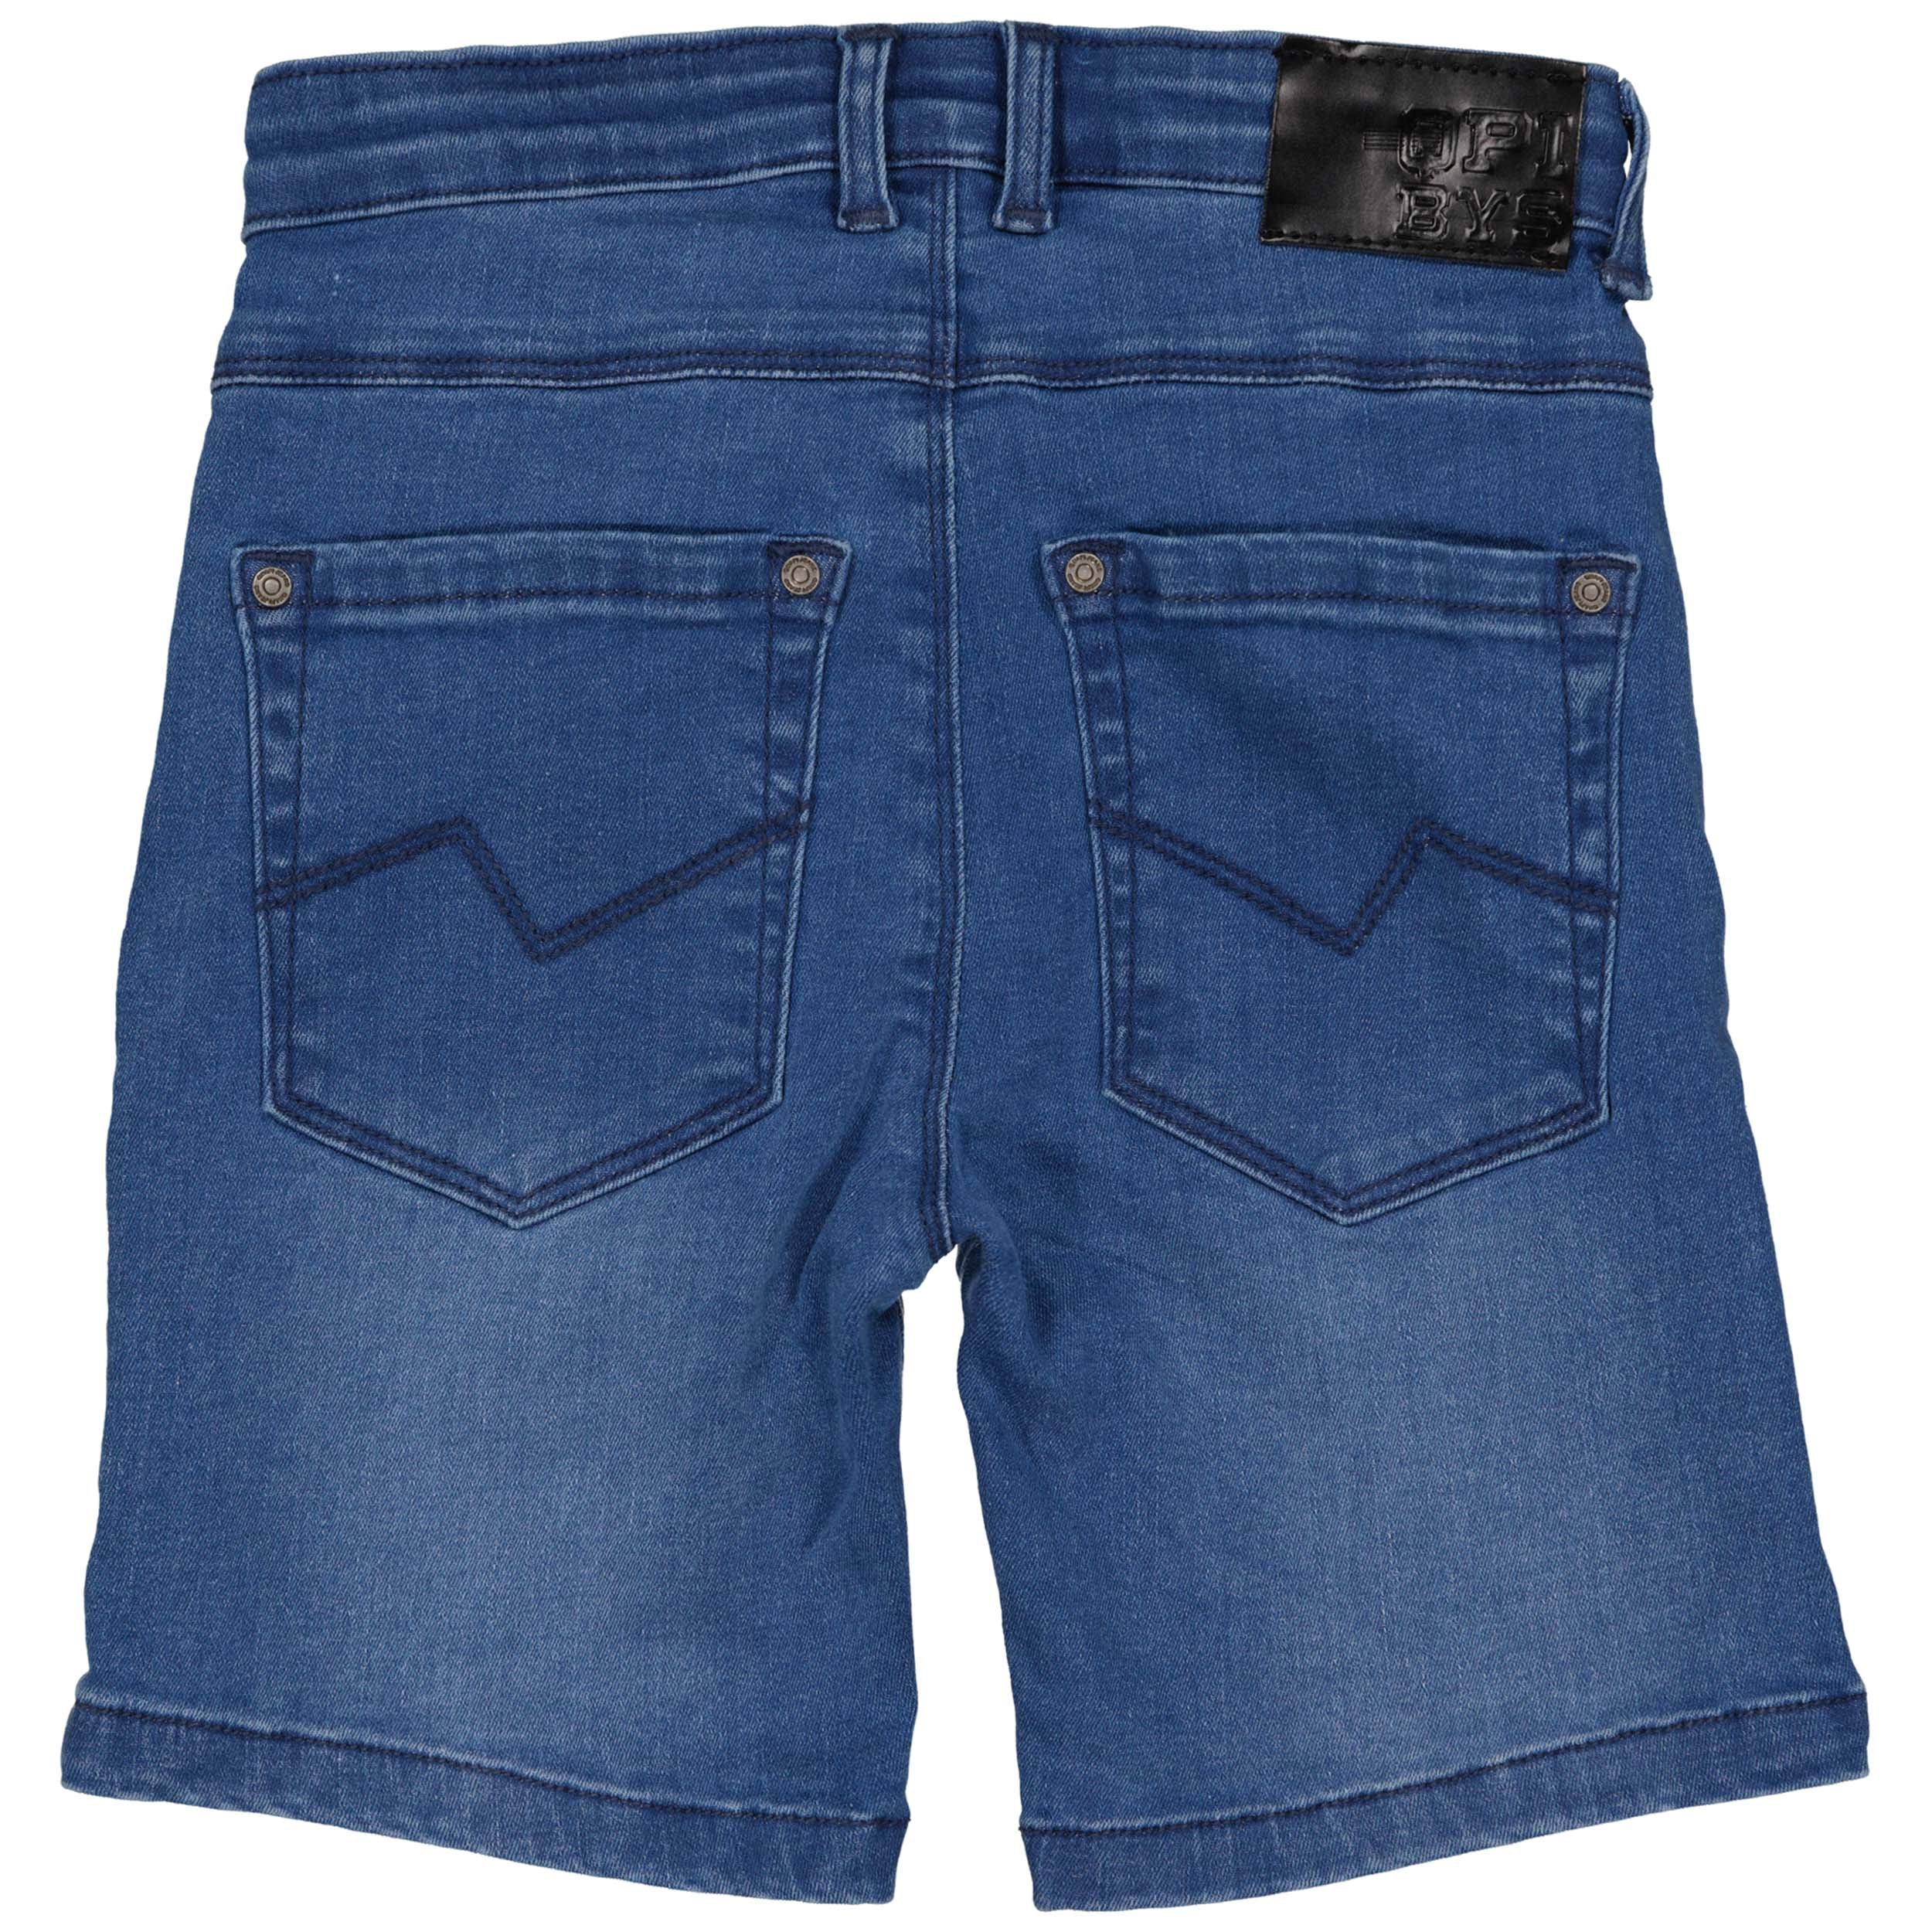 Jongens Jeans Short BUSEQS242 van  in de kleur Blue Denim in maat 122-128.